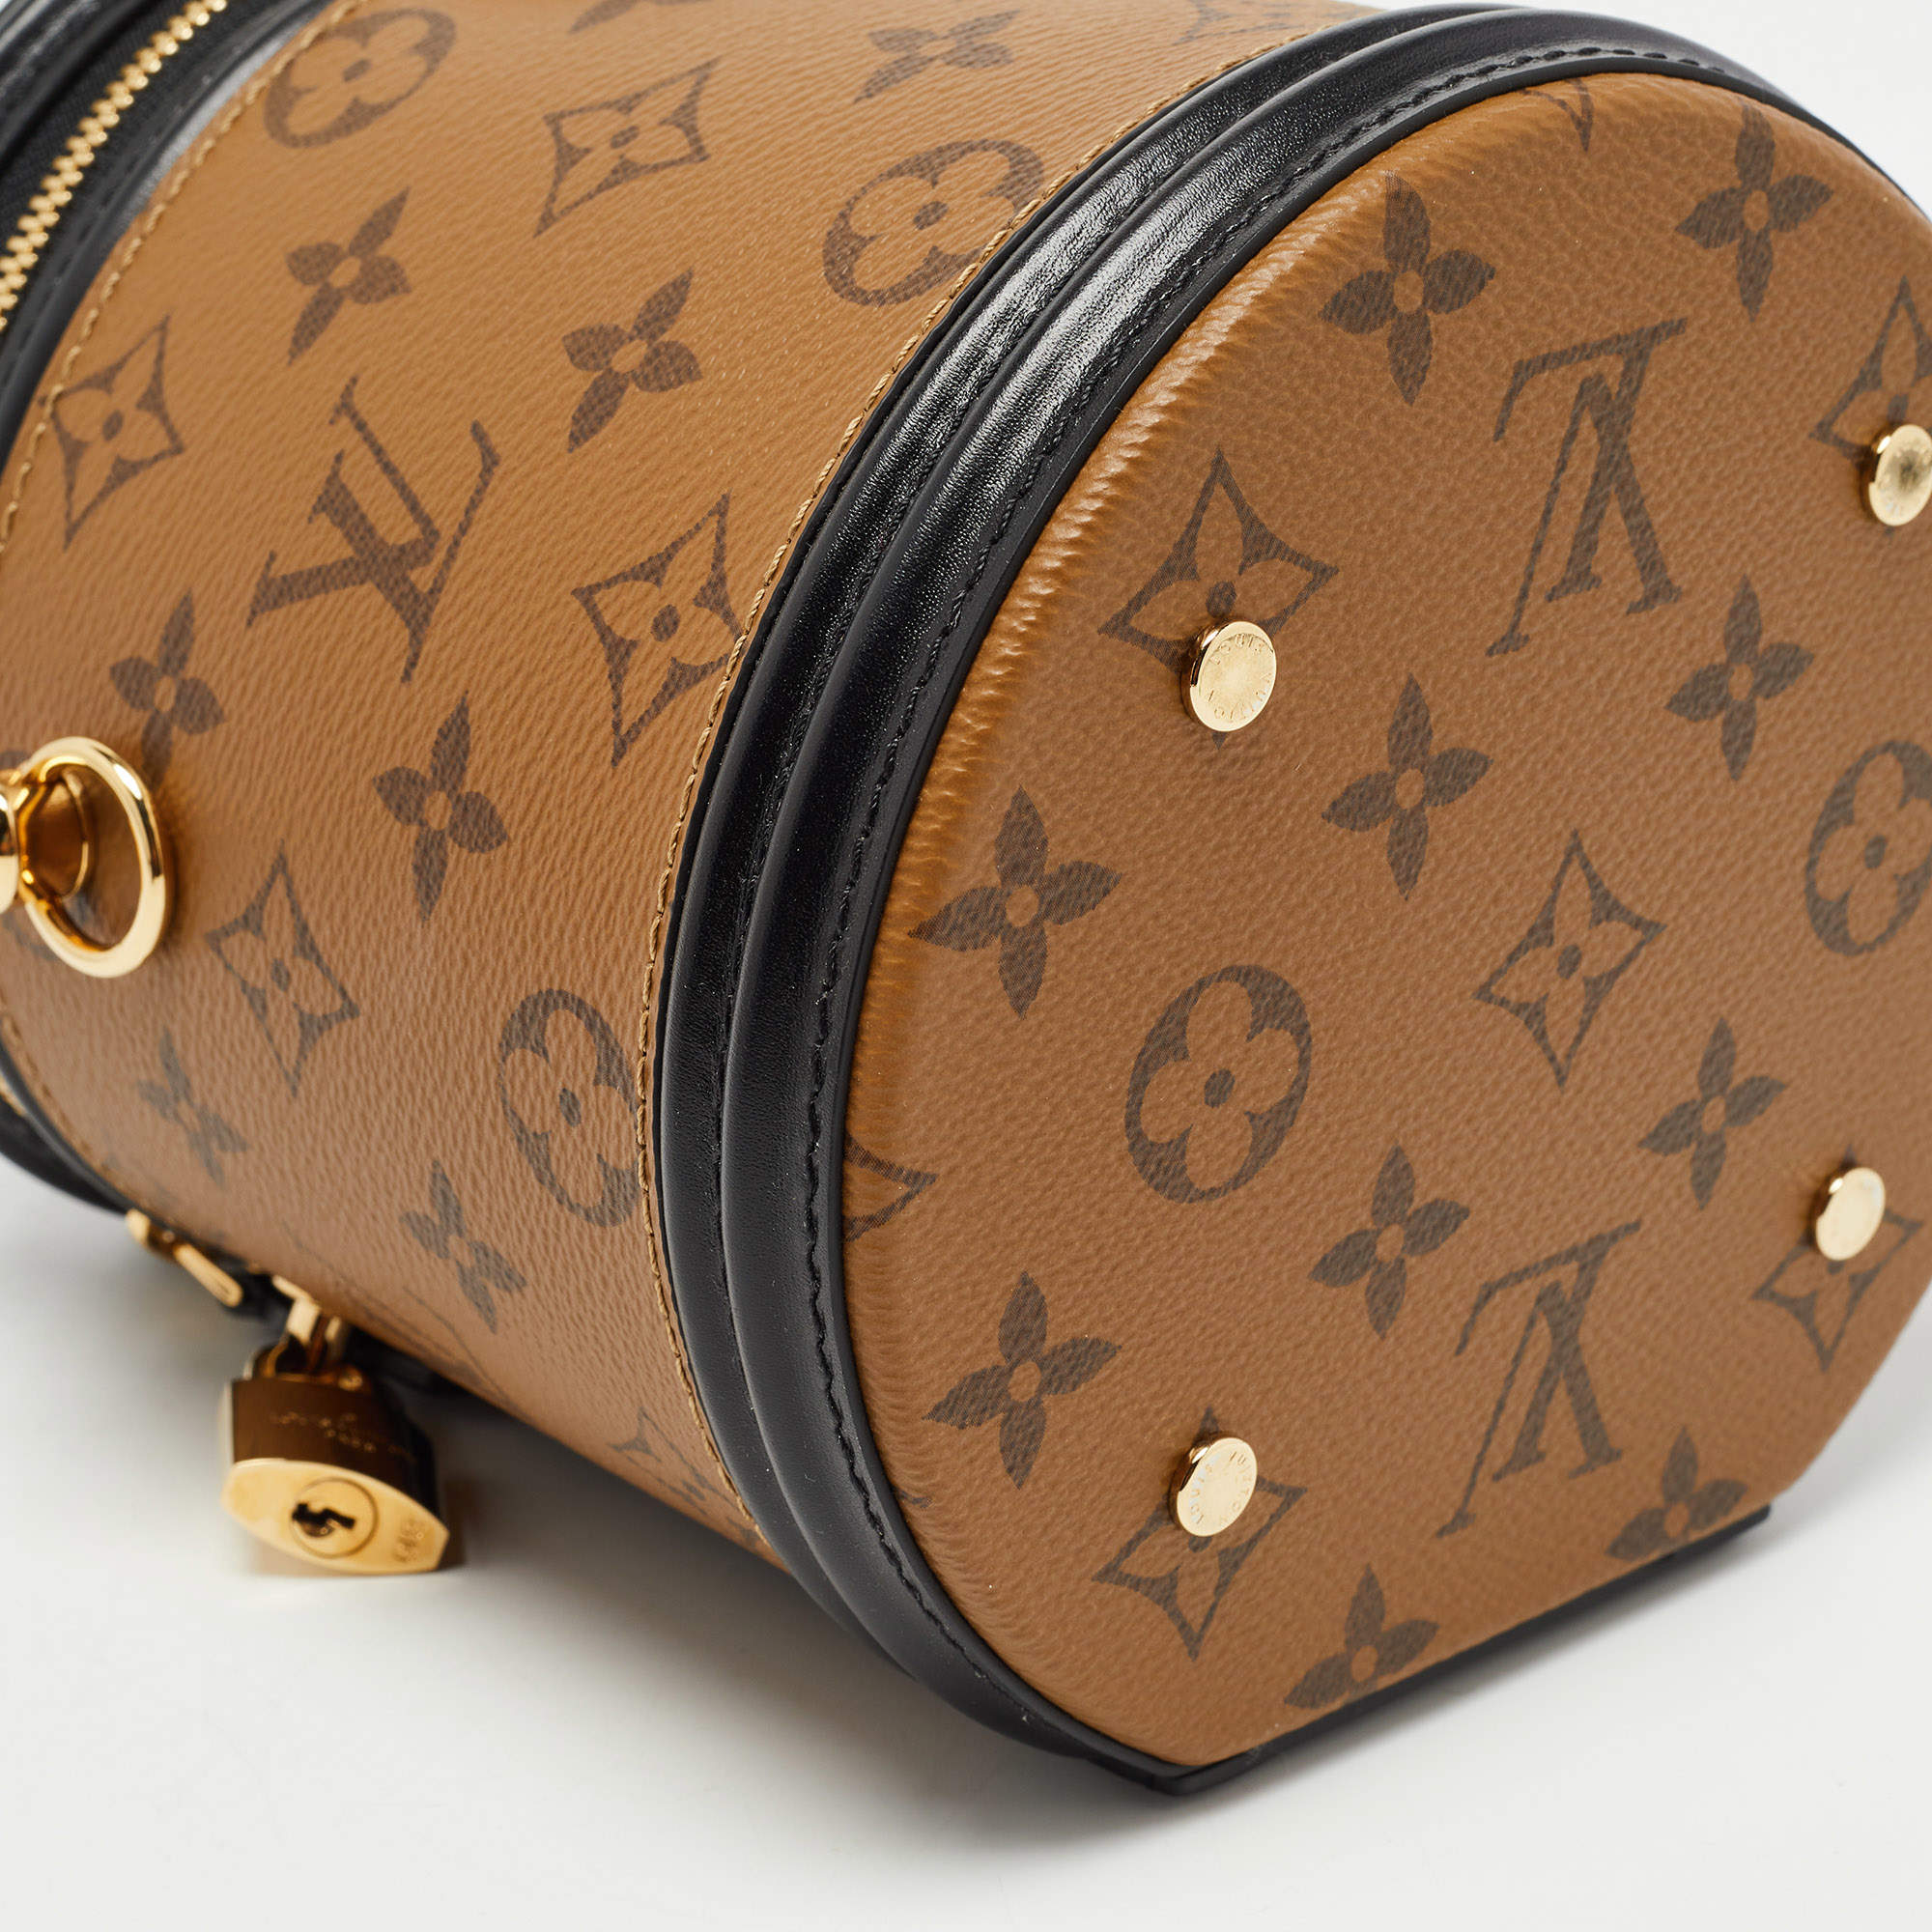 Cannes cloth handbag Louis Vuitton Brown in Cloth - 23636003